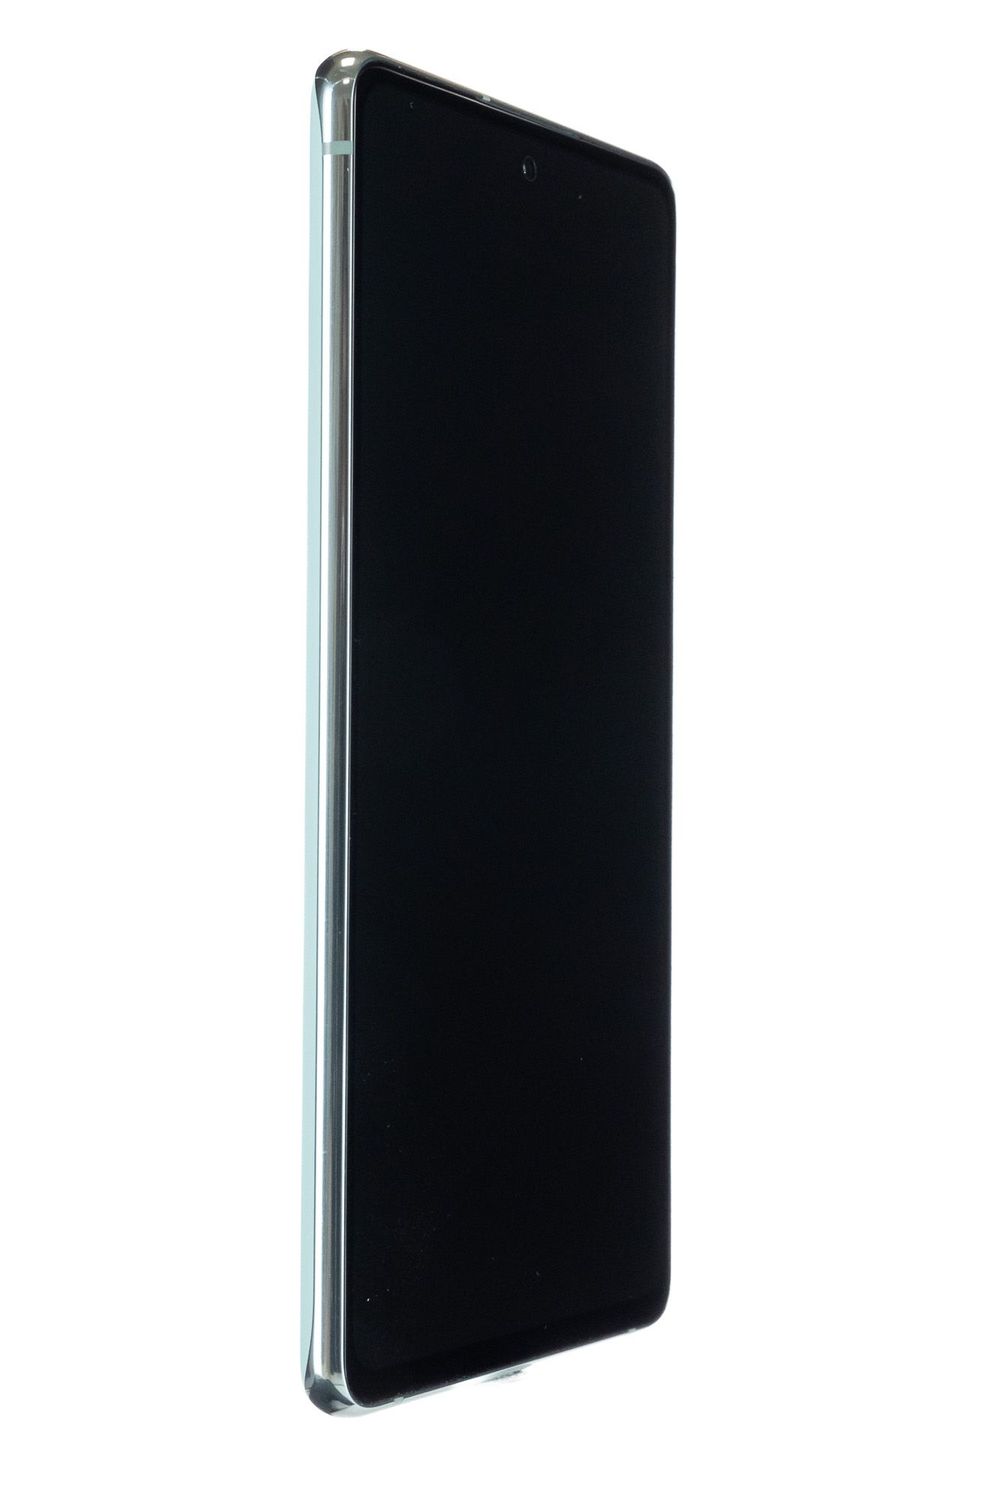 Κινητό τηλέφωνο Samsung Galaxy S20 FE Dual Sim, Cloud Mint, 256 GB, Foarte Bun